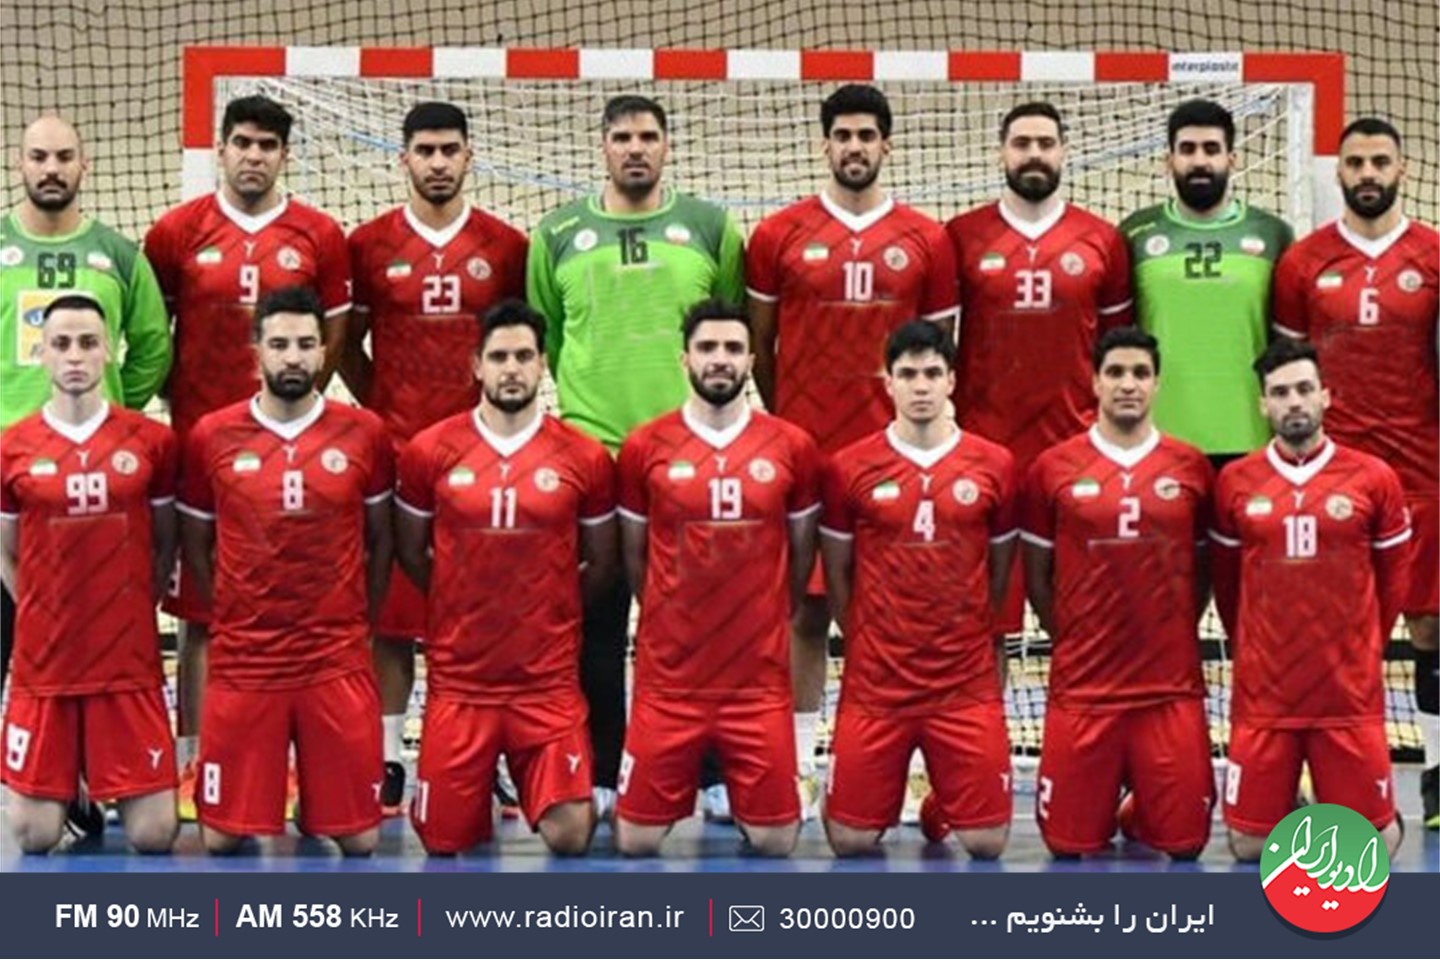 بررسی مسابقات هندبال قهرمانی جهان در رادیو ایران